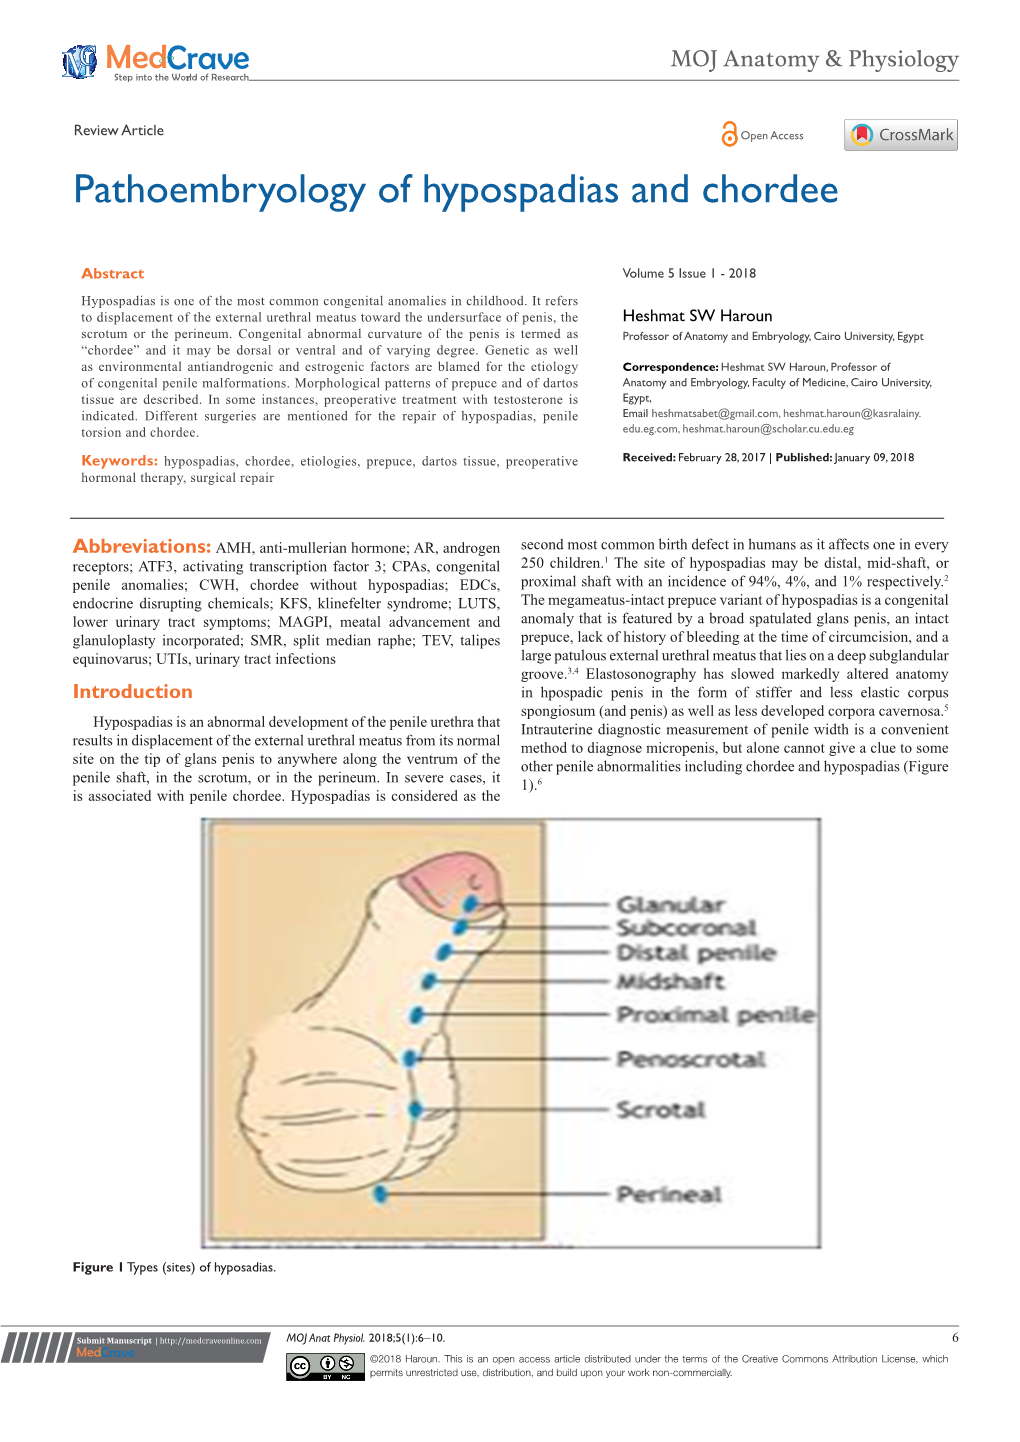 Pathoembryology of Hypospadias and Chordee